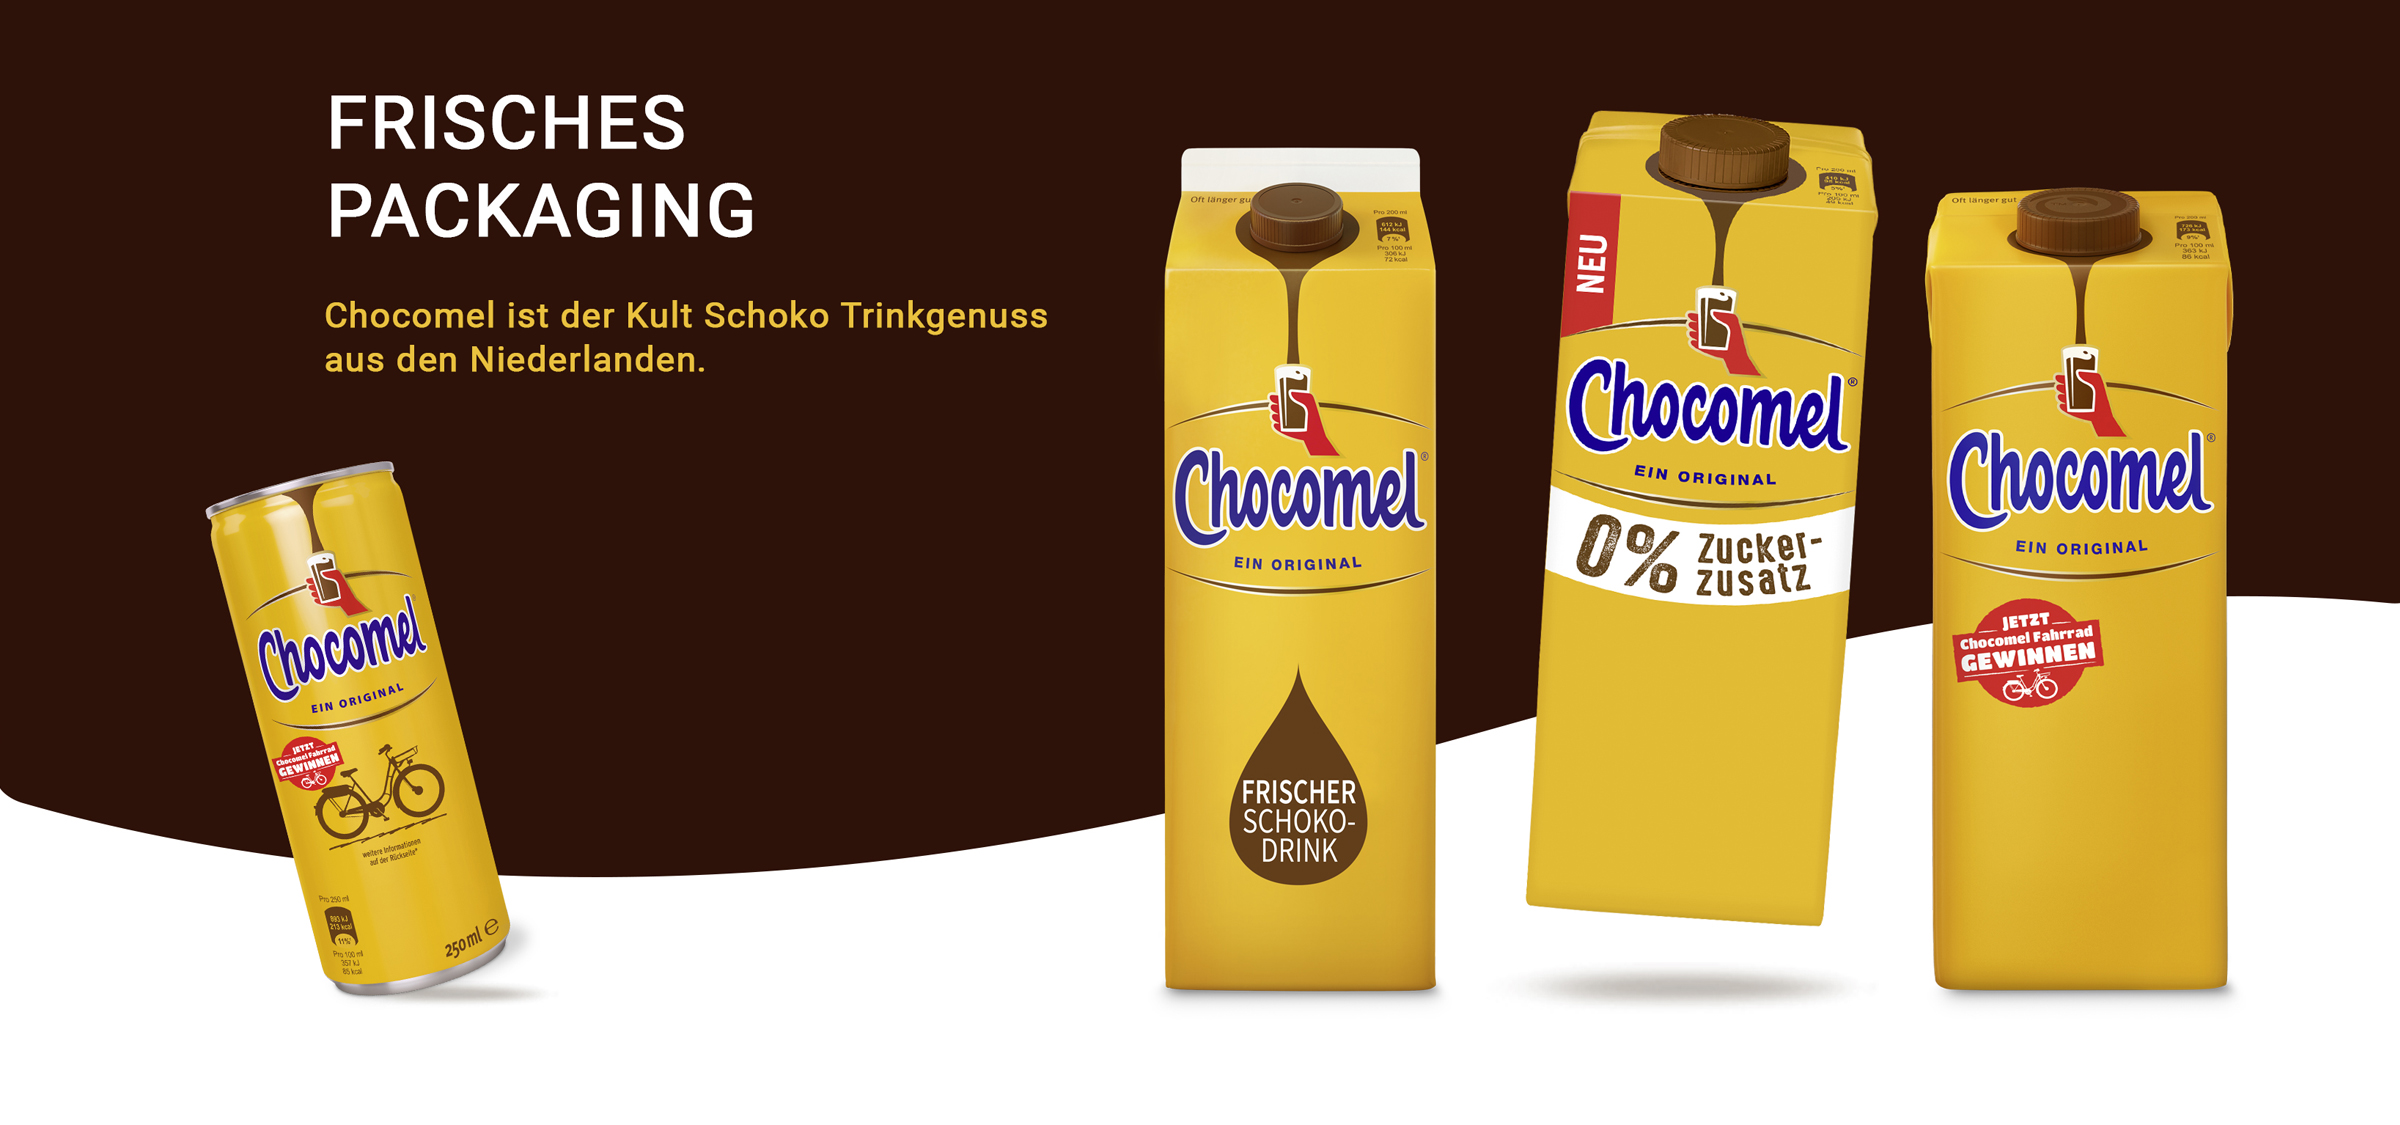 Chocomel ist der Kult Schoko Trinkgenuss aus den Niederlanden. Packaging von adworx